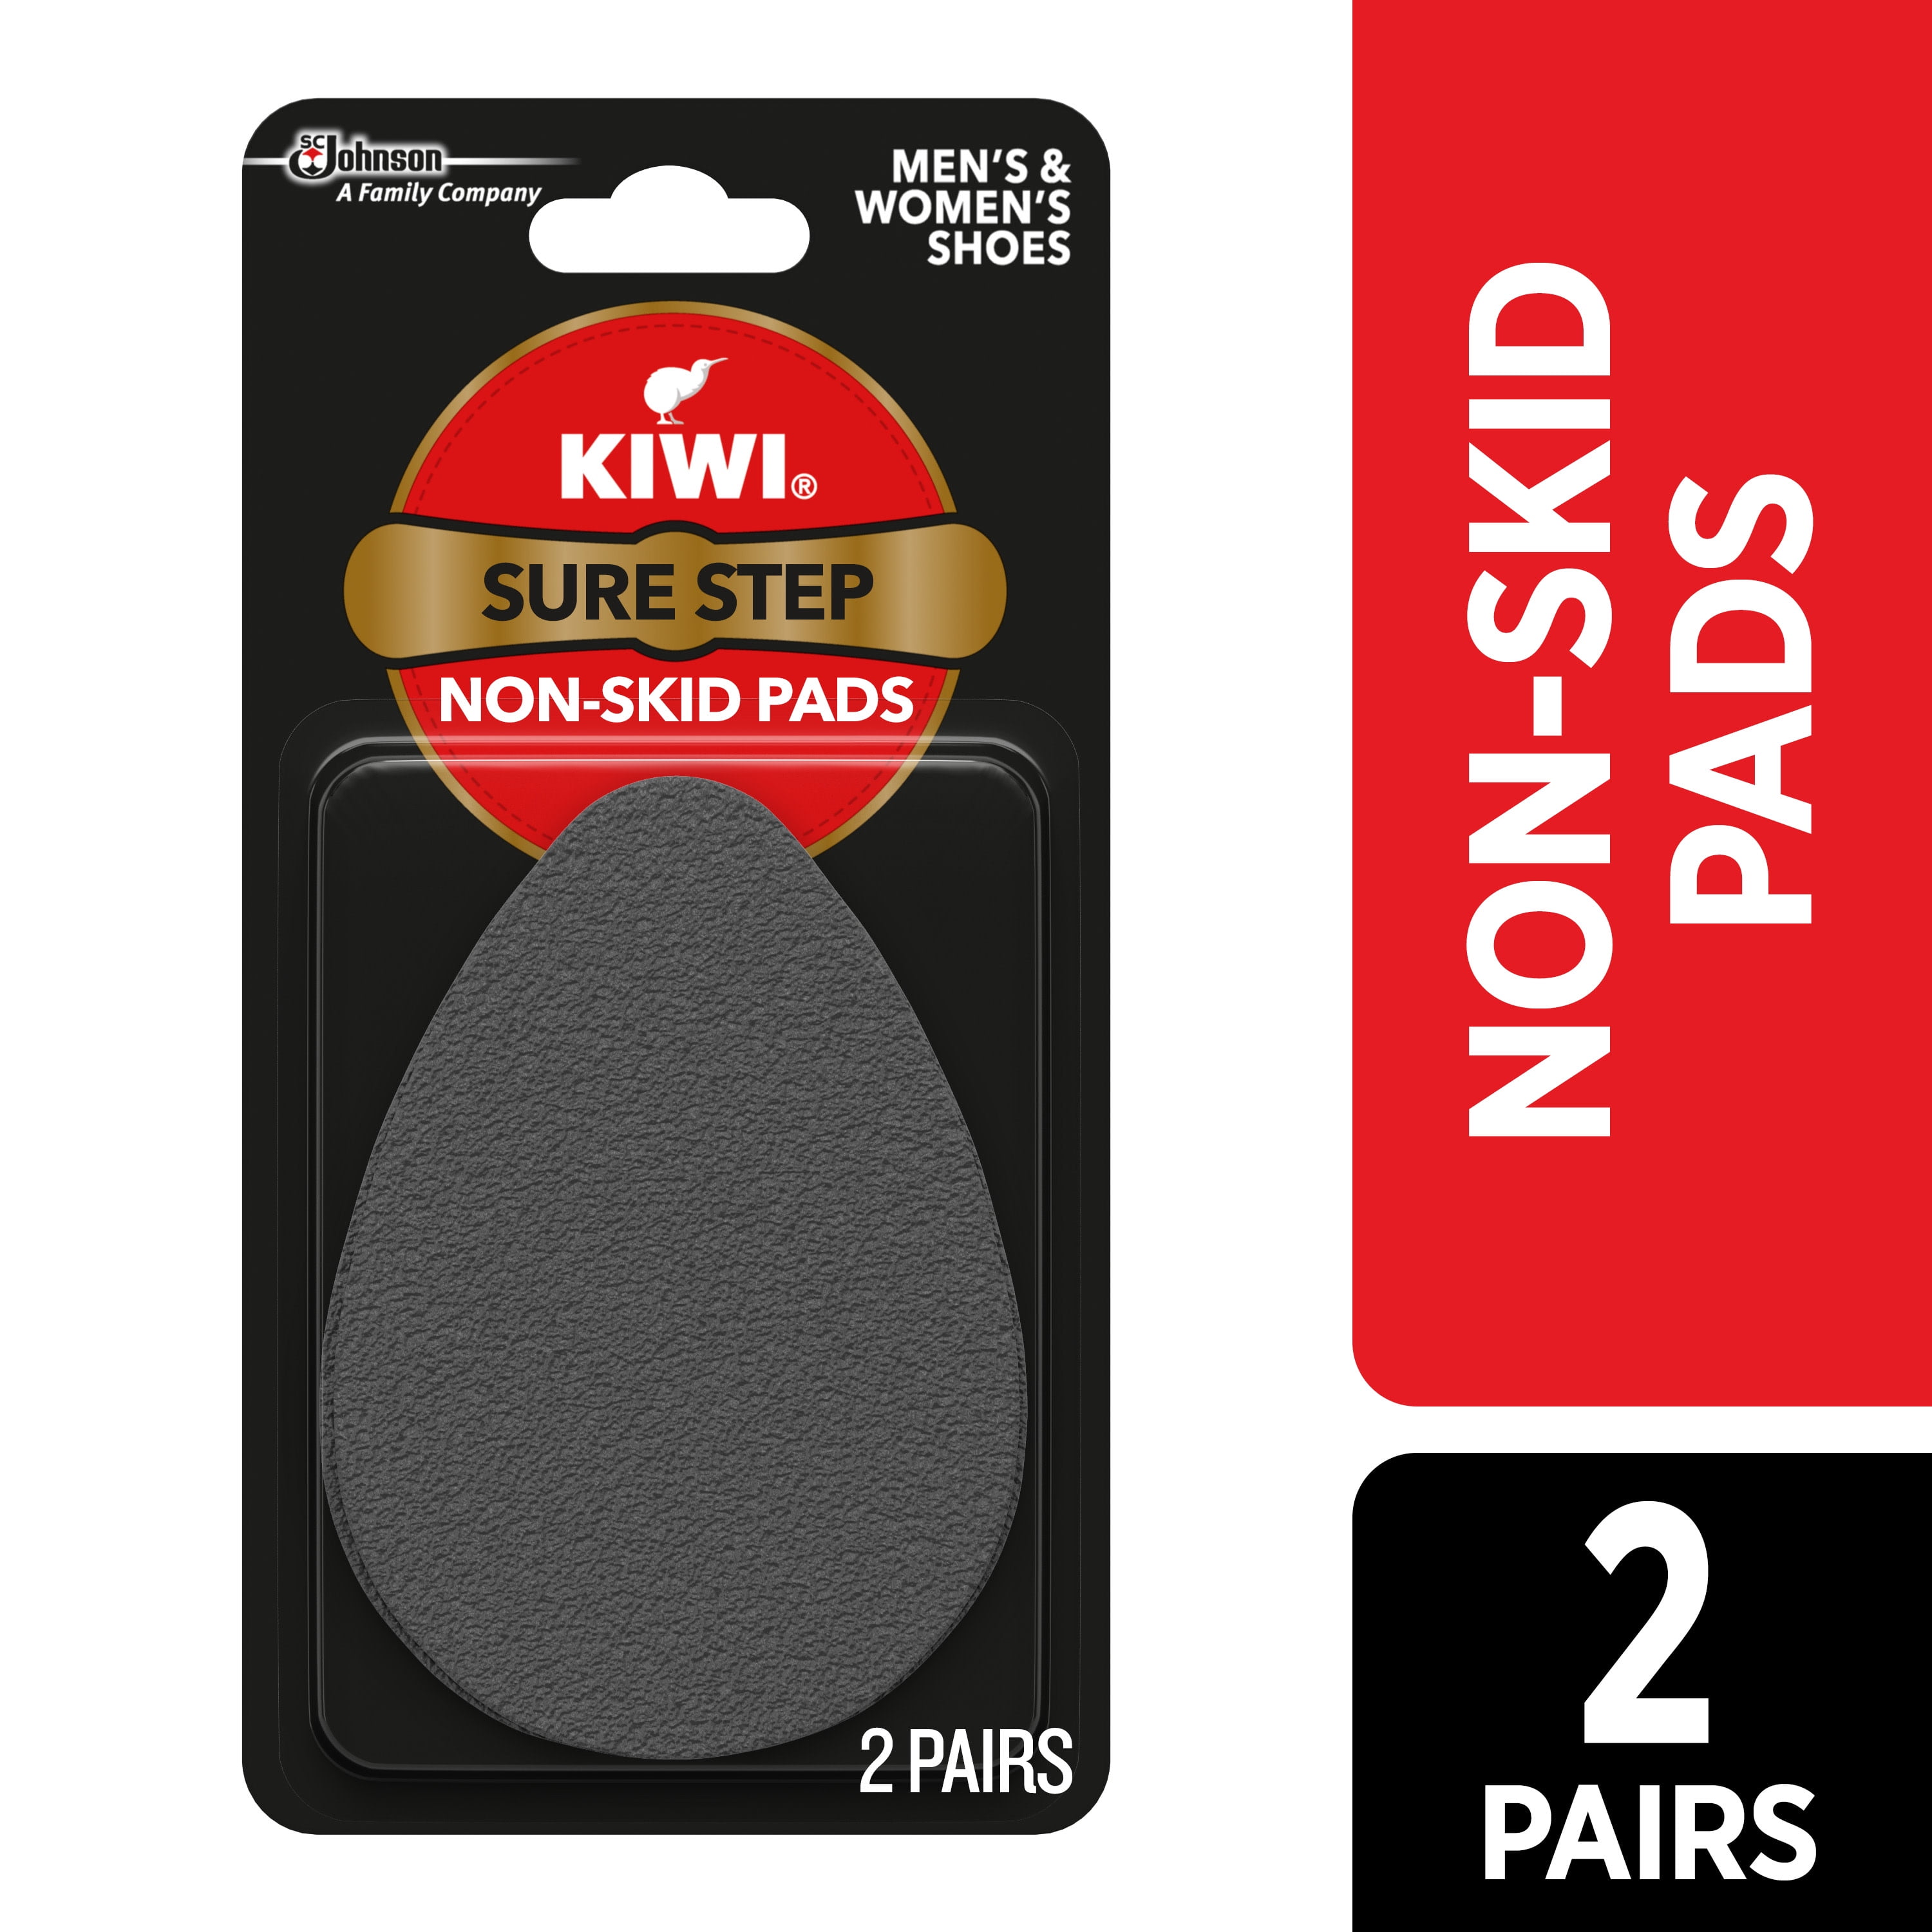 KIWI Sure Step Non-Skid Pads (2 Pairs) 